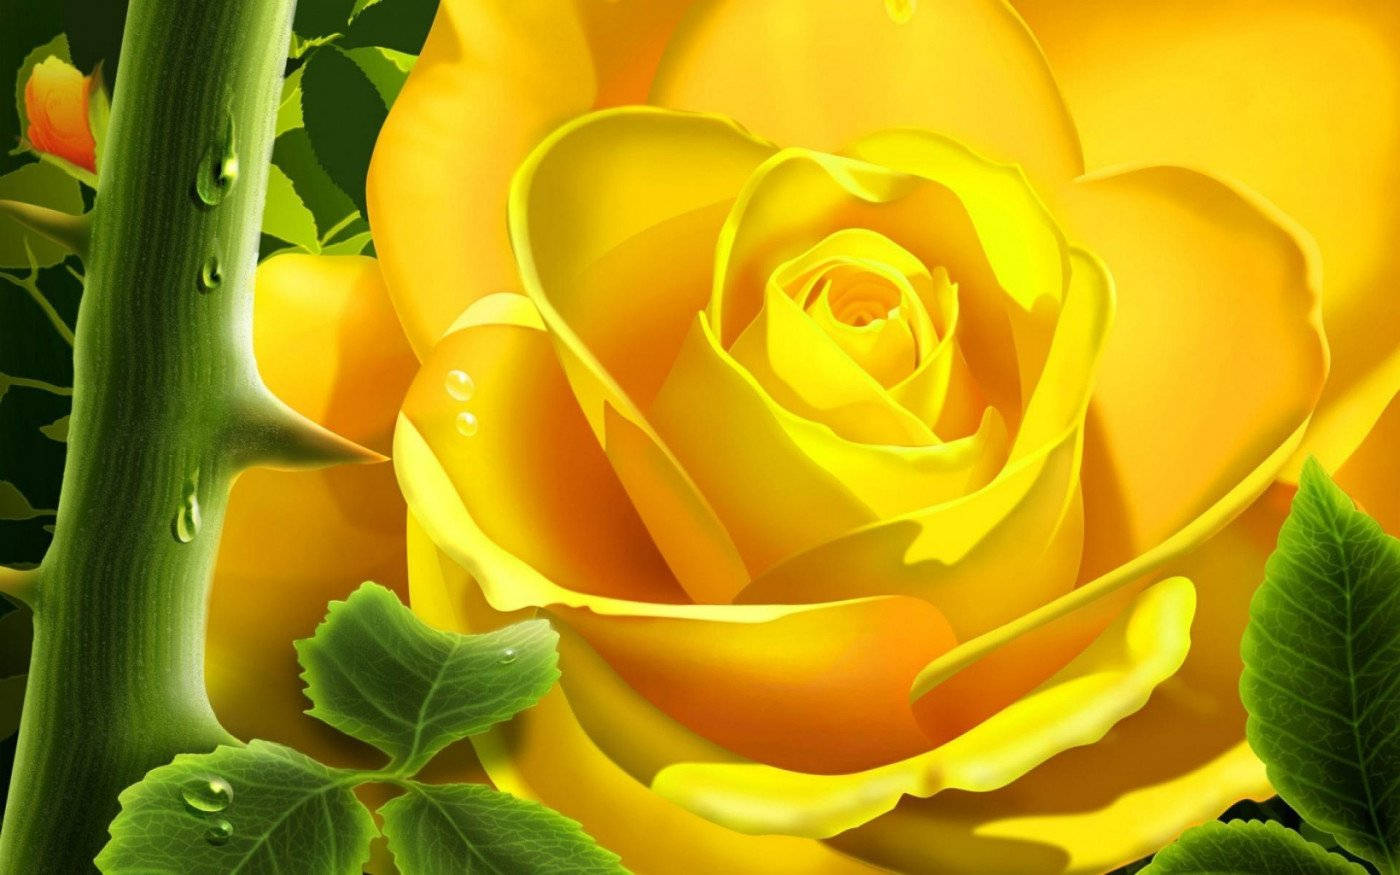 Yellow Rose Digital Art Wallpaper